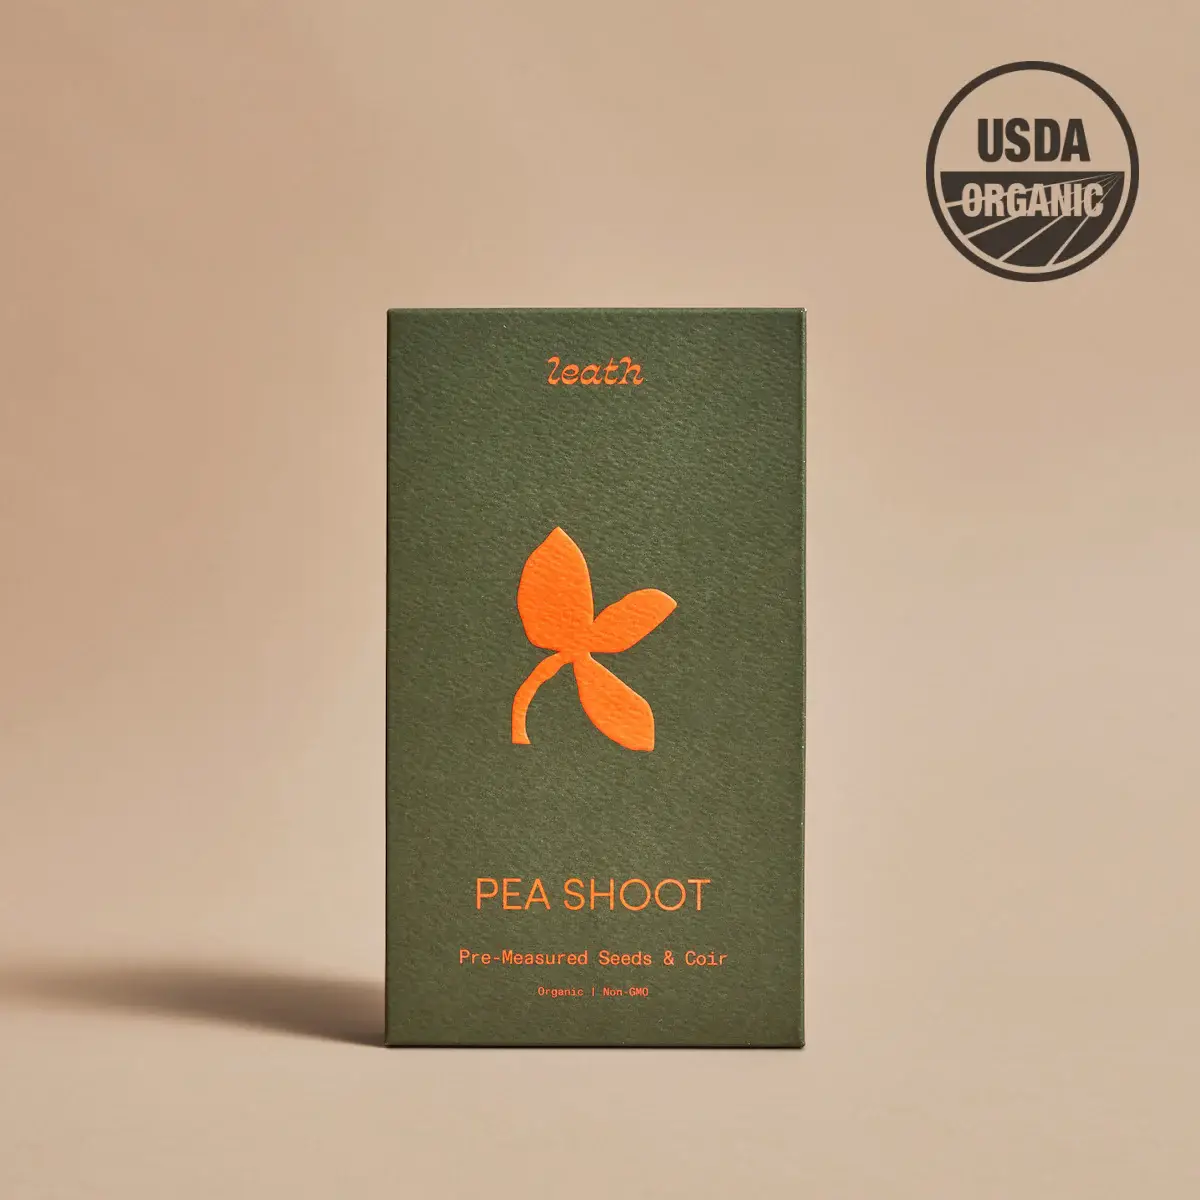 Leathlet - Pea Shoot